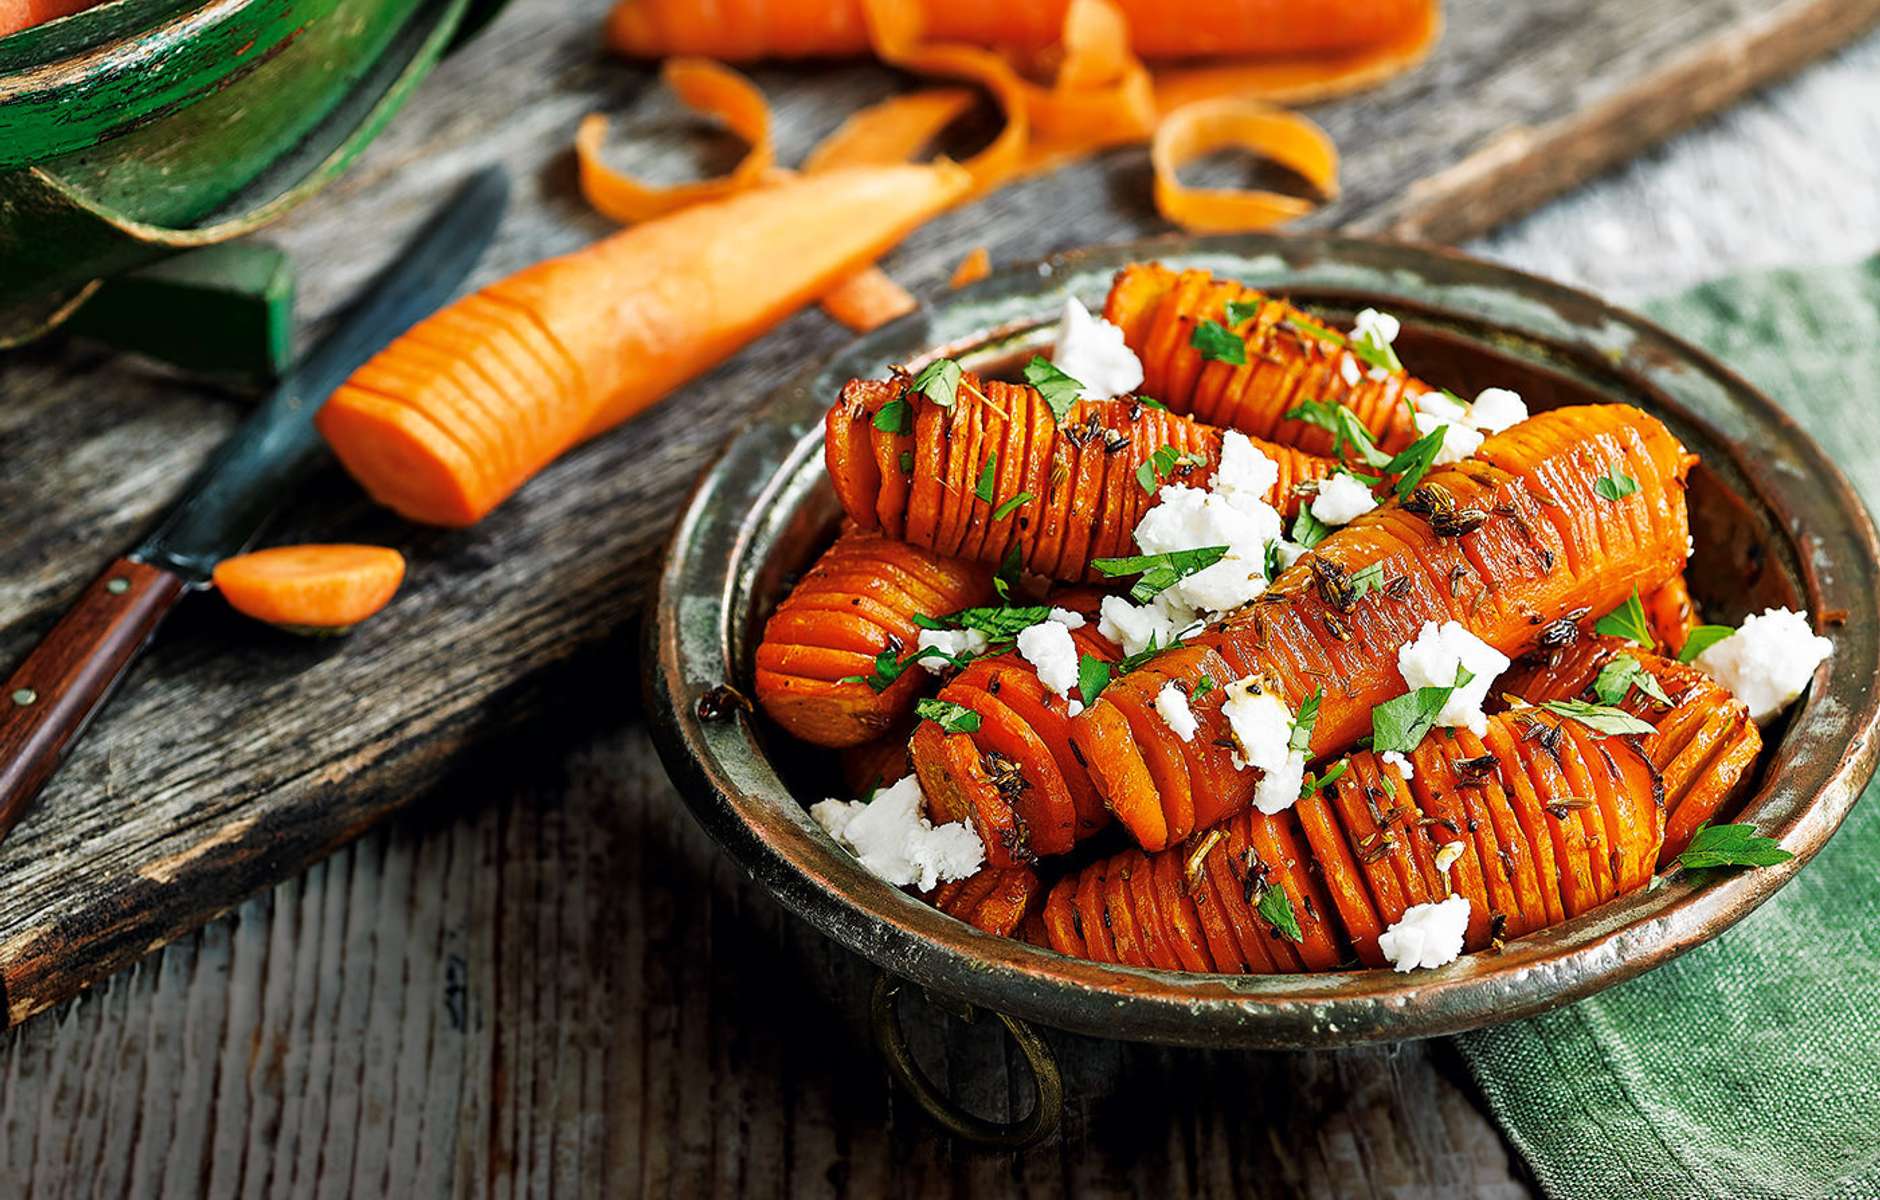 Блюда из моркови простые рецепты с фото и вкусные